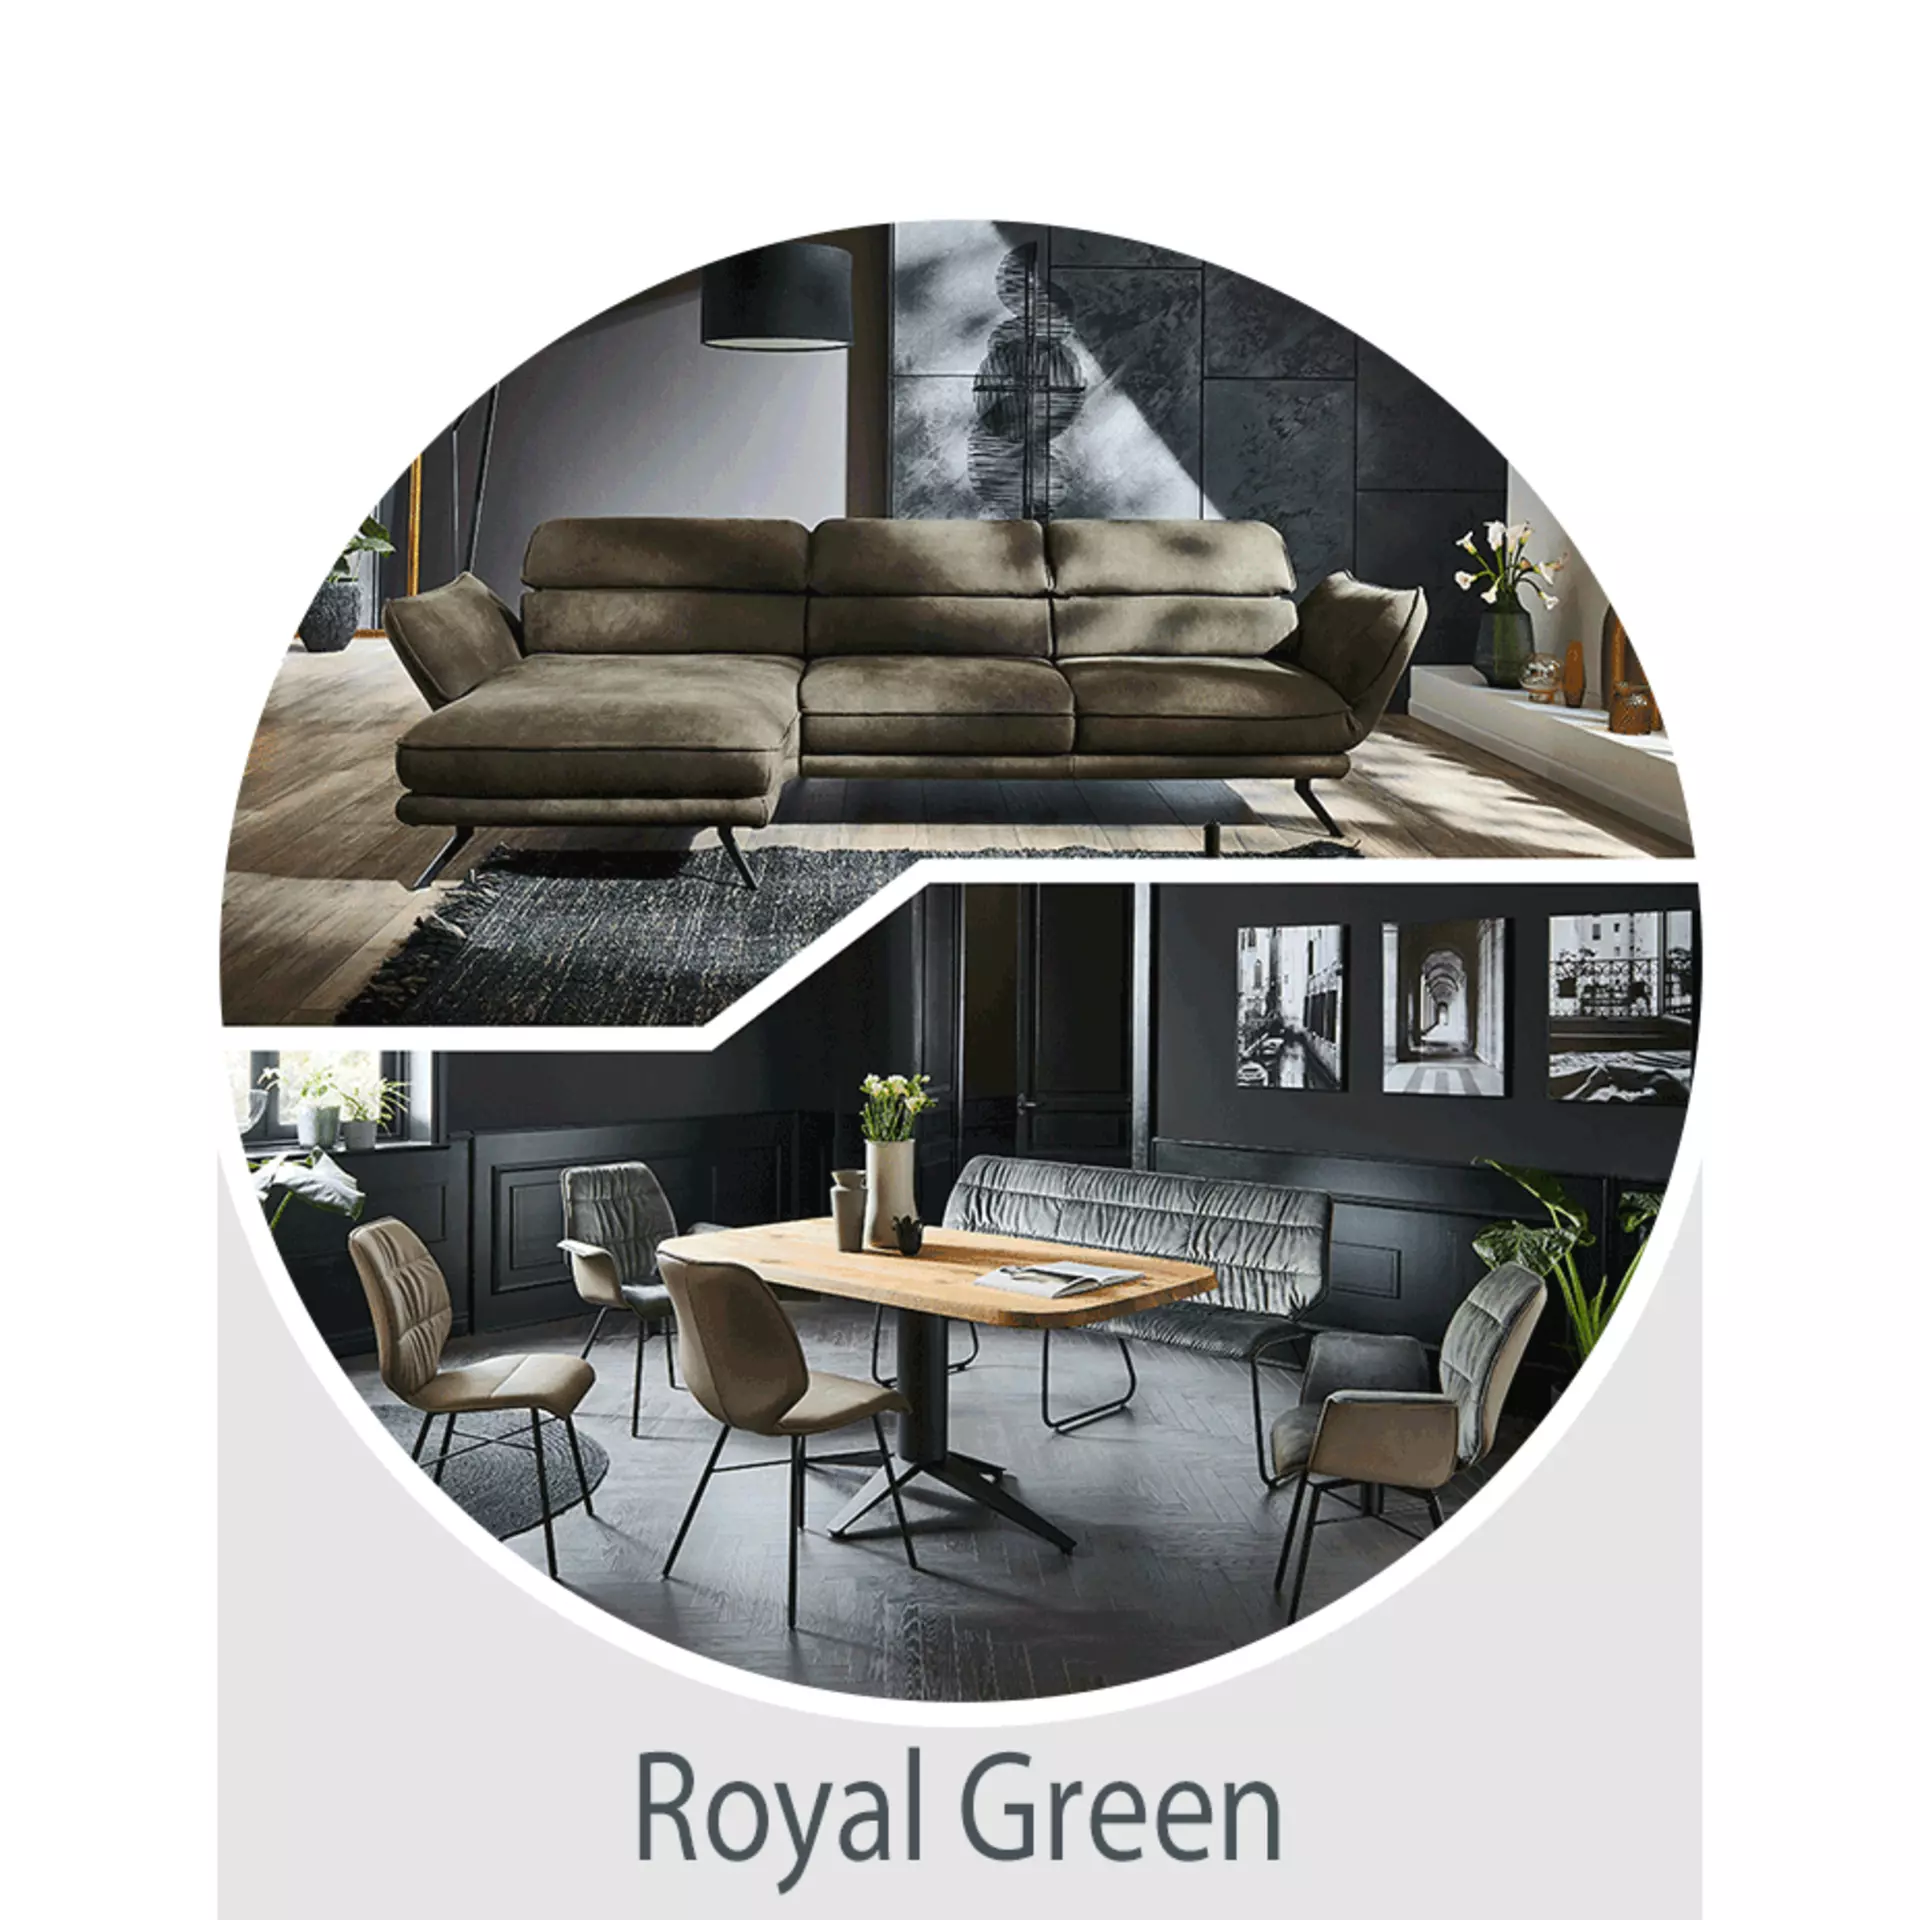 Jetzt den Wohntrend Royal Green entdecken - natürlich elegant einrichten